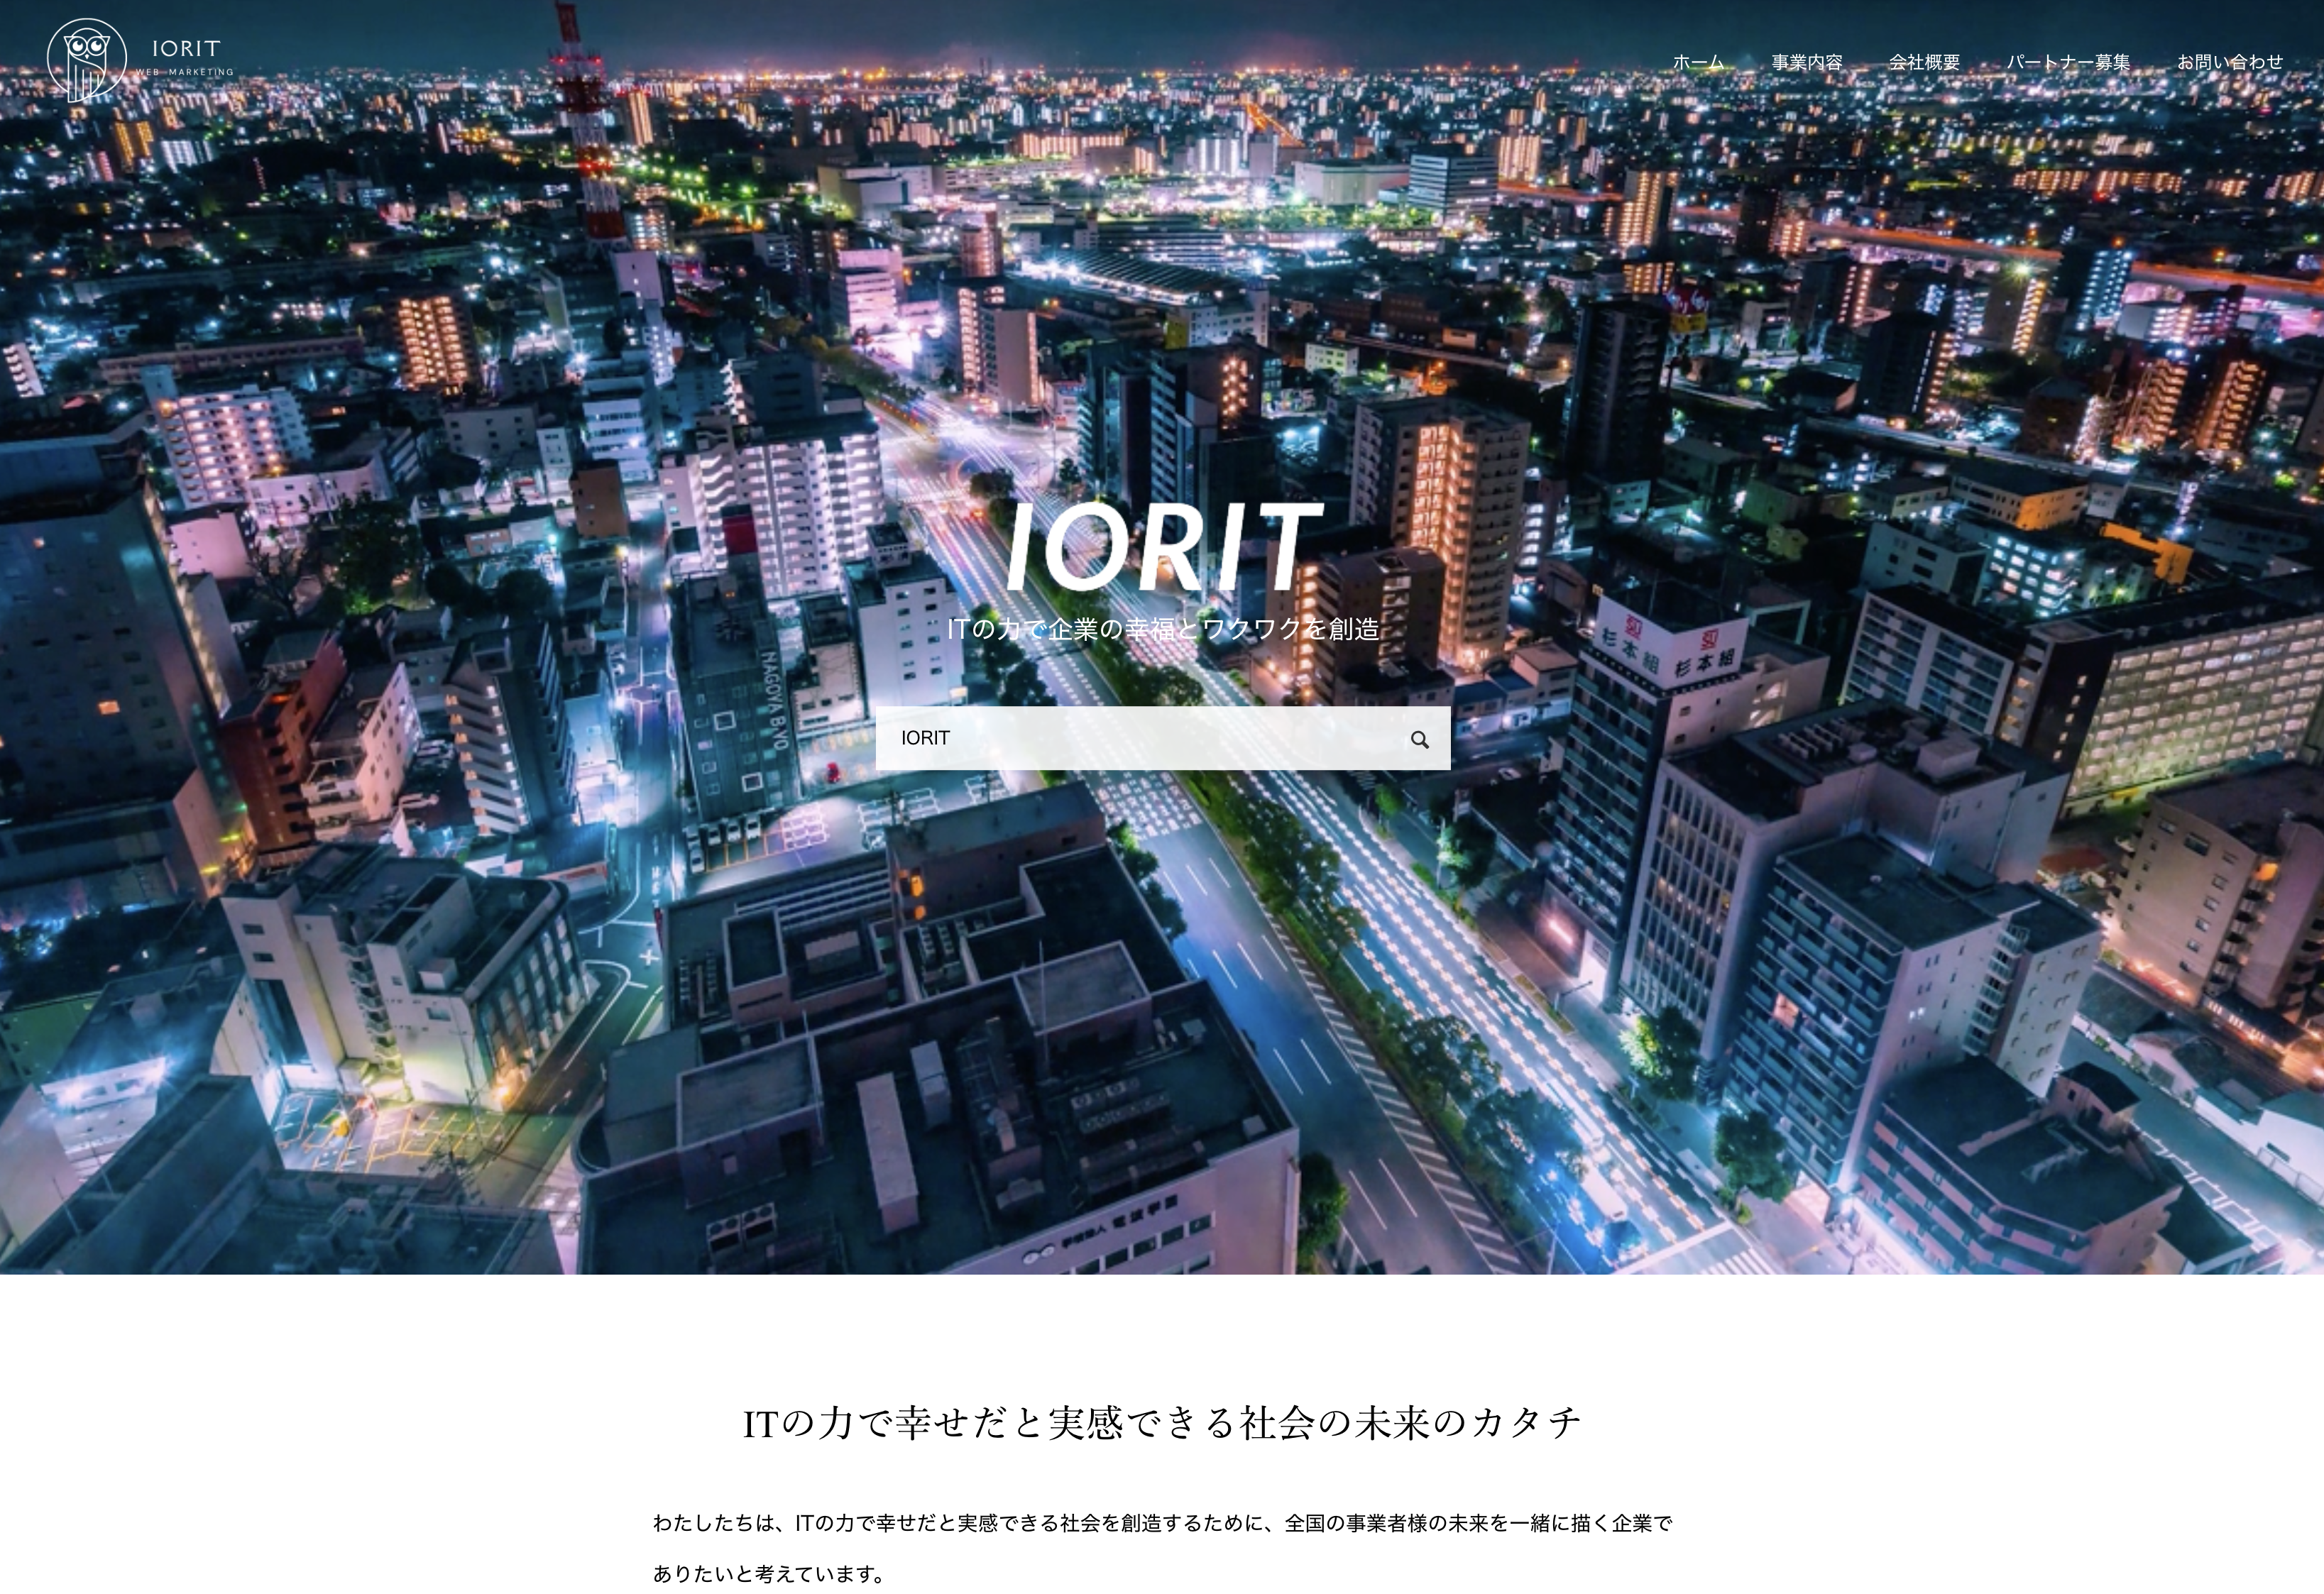 株式会社IORITの株式会社IORIT:求人広告サービス